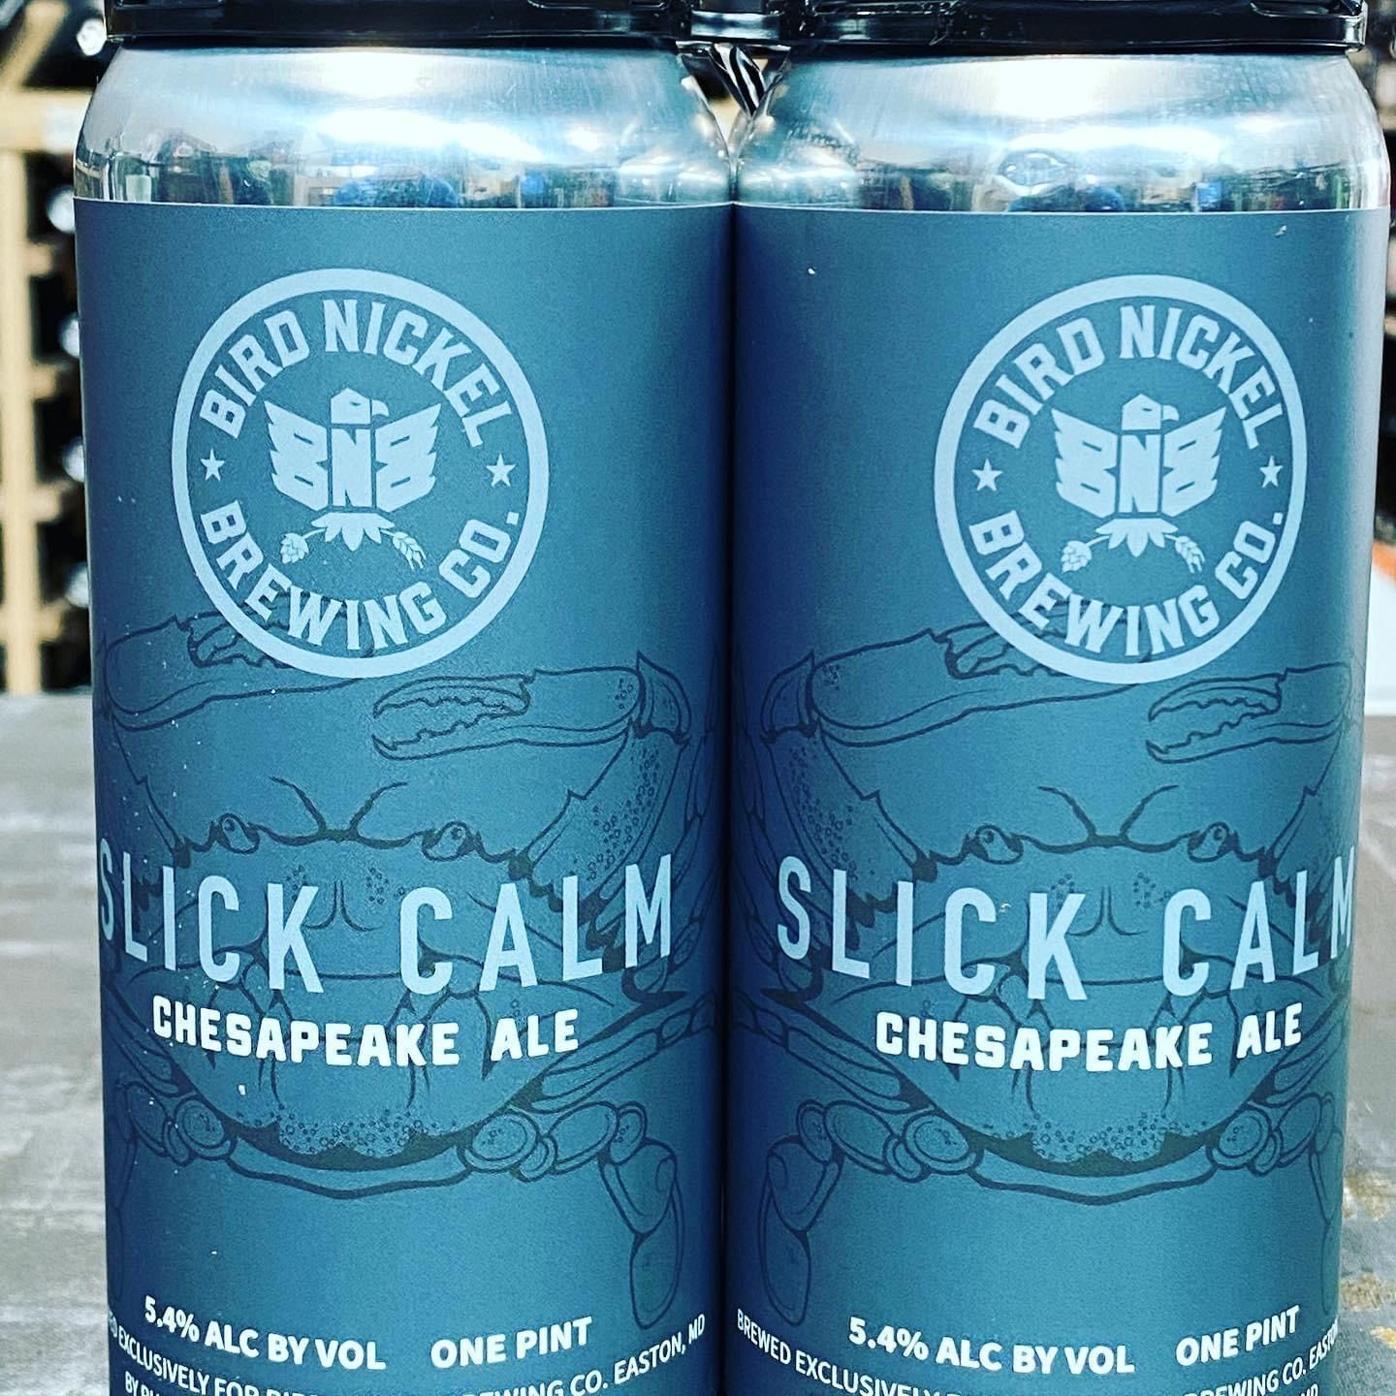 Slick Calm Chesapeake Ale